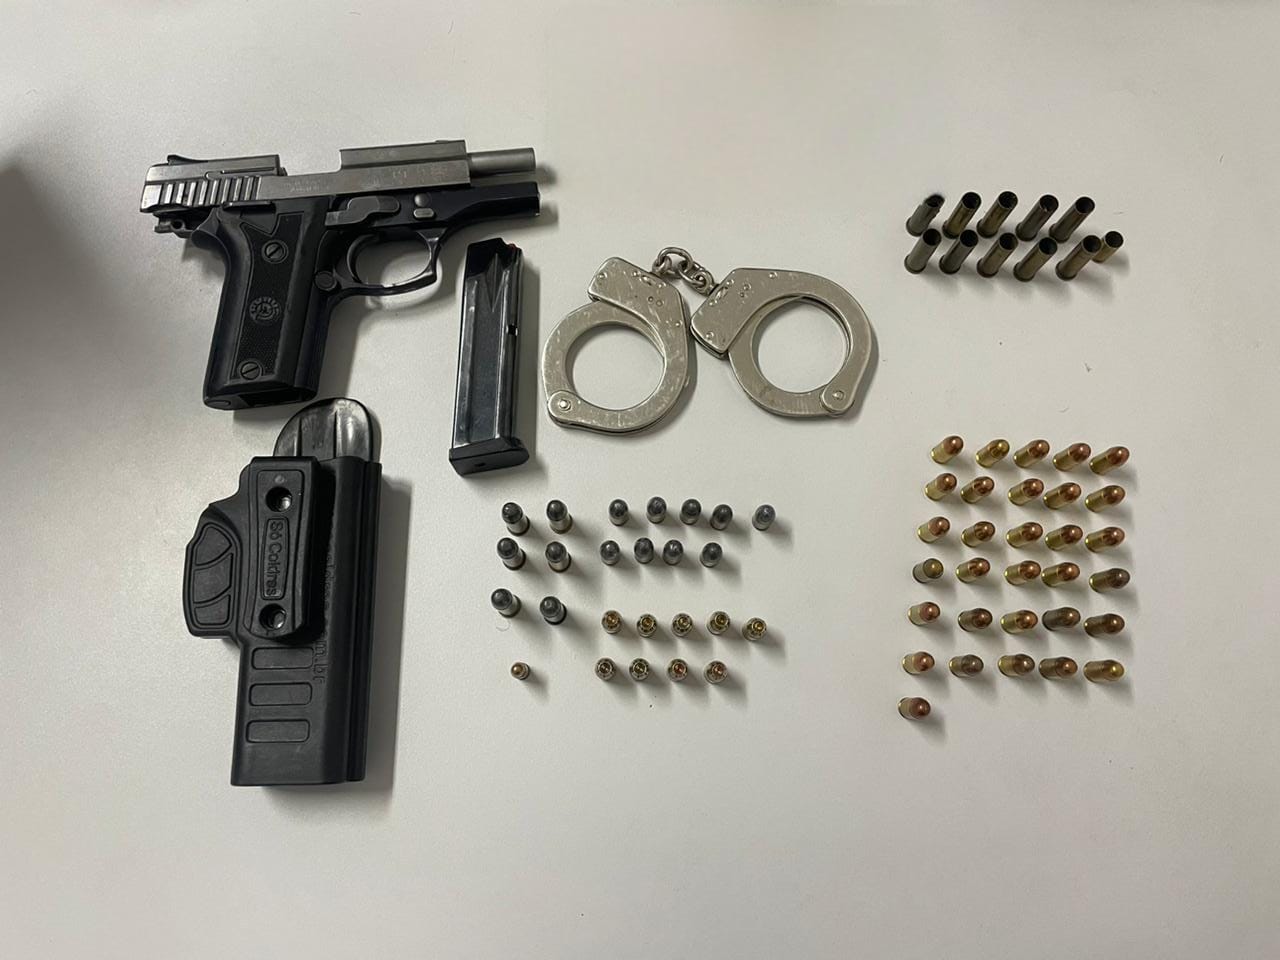 Arma e munição encontradas na casa do comerciante em Vila Velha